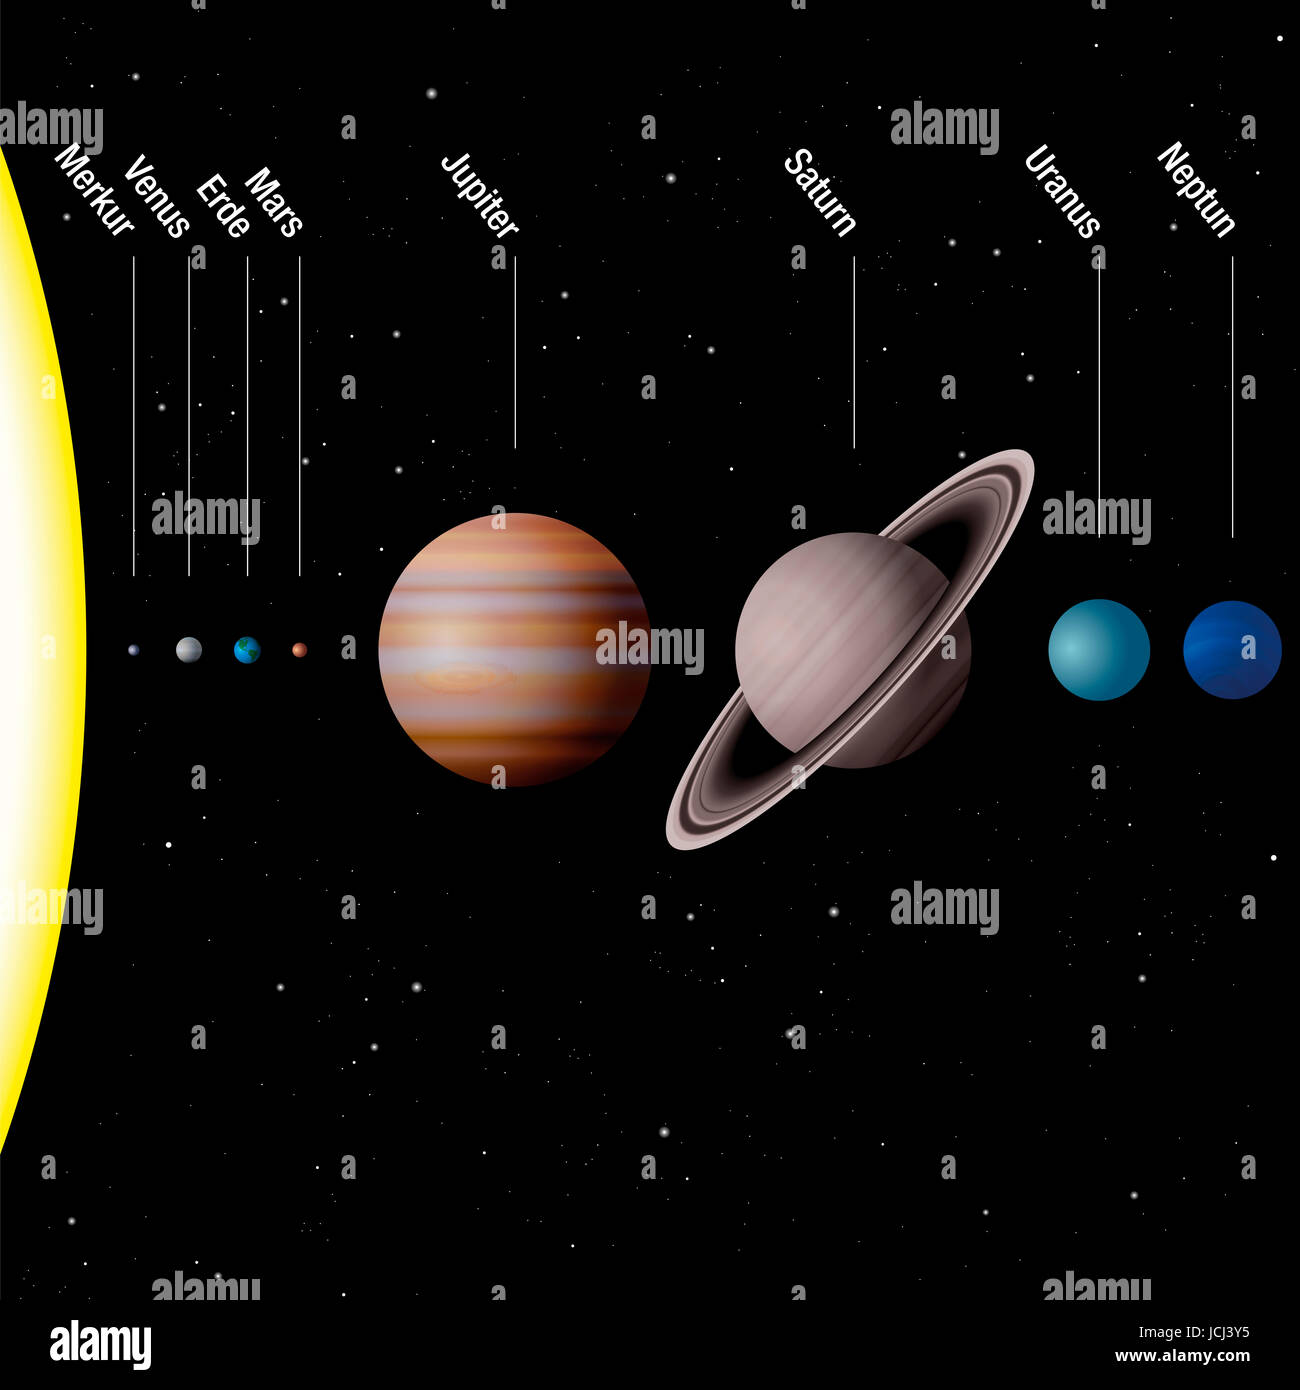 Eight planets immagini e fotografie stock ad alta risoluzione - Alamy